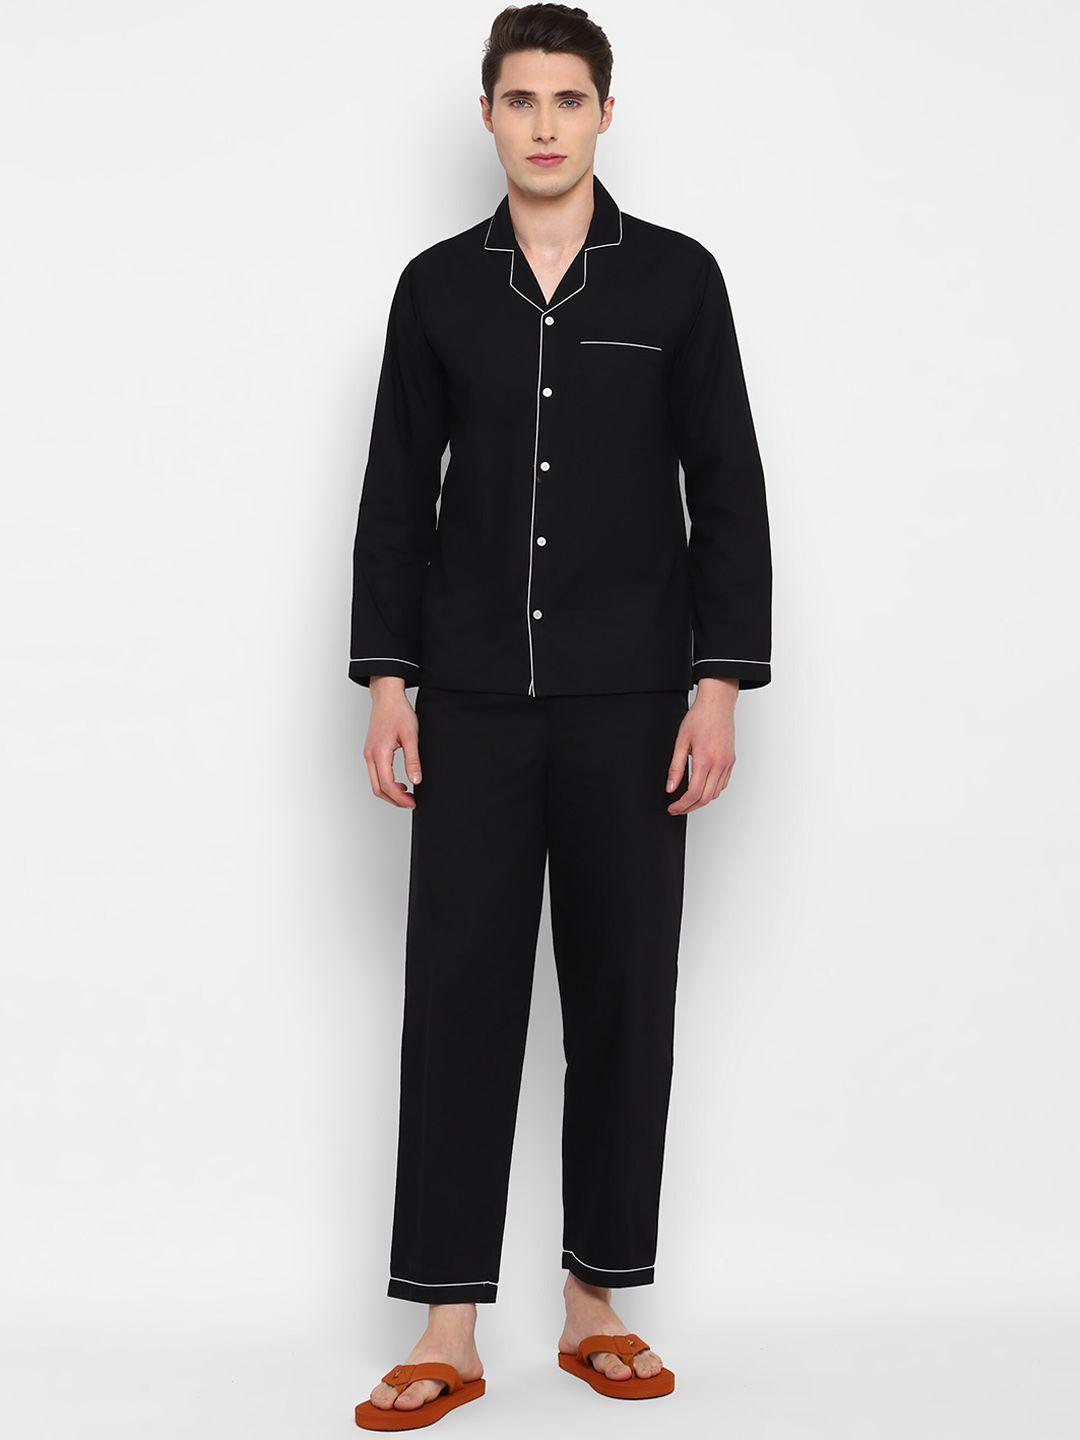 shopbloom pure cotton night suit mc-01-ls